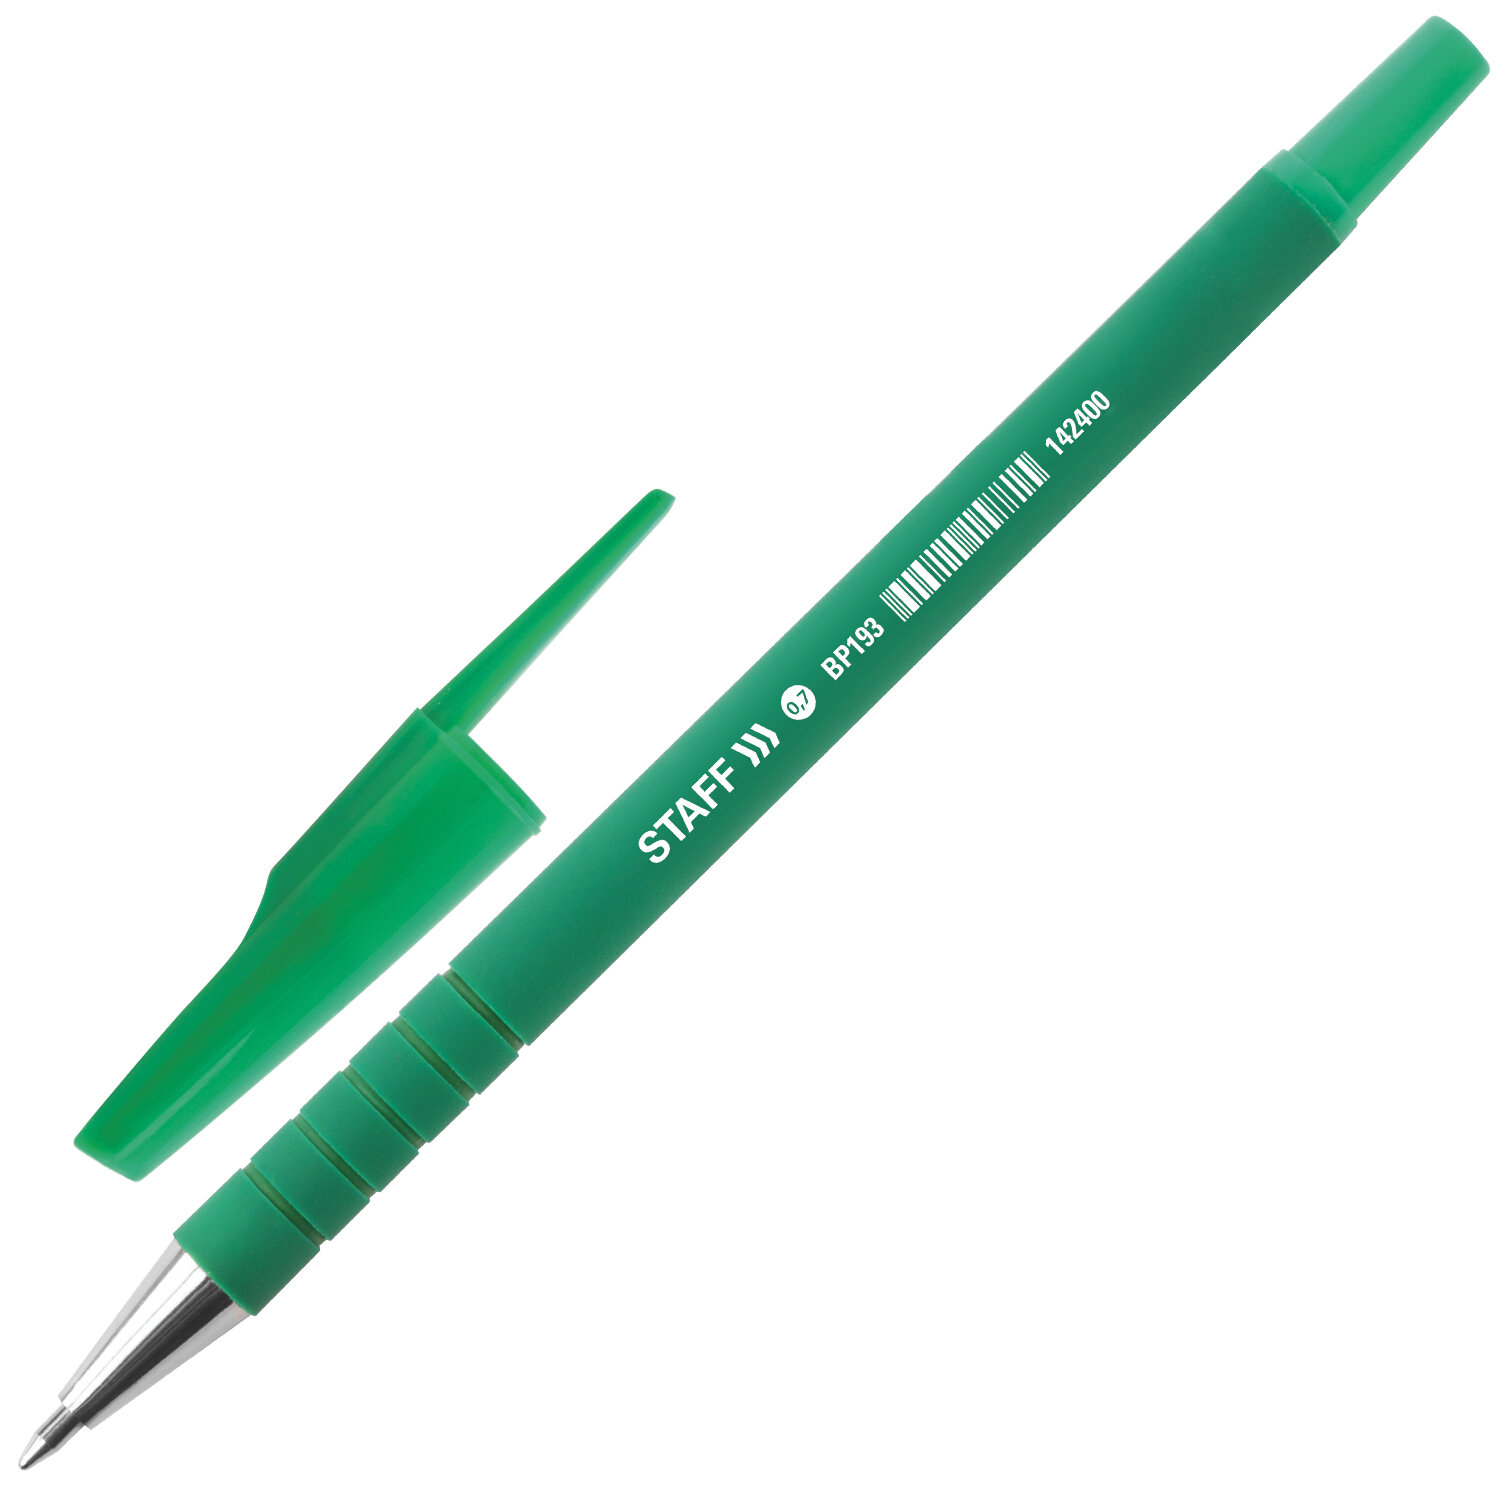 STAFF Ручка STAFF 142400, комплект 50 шт.